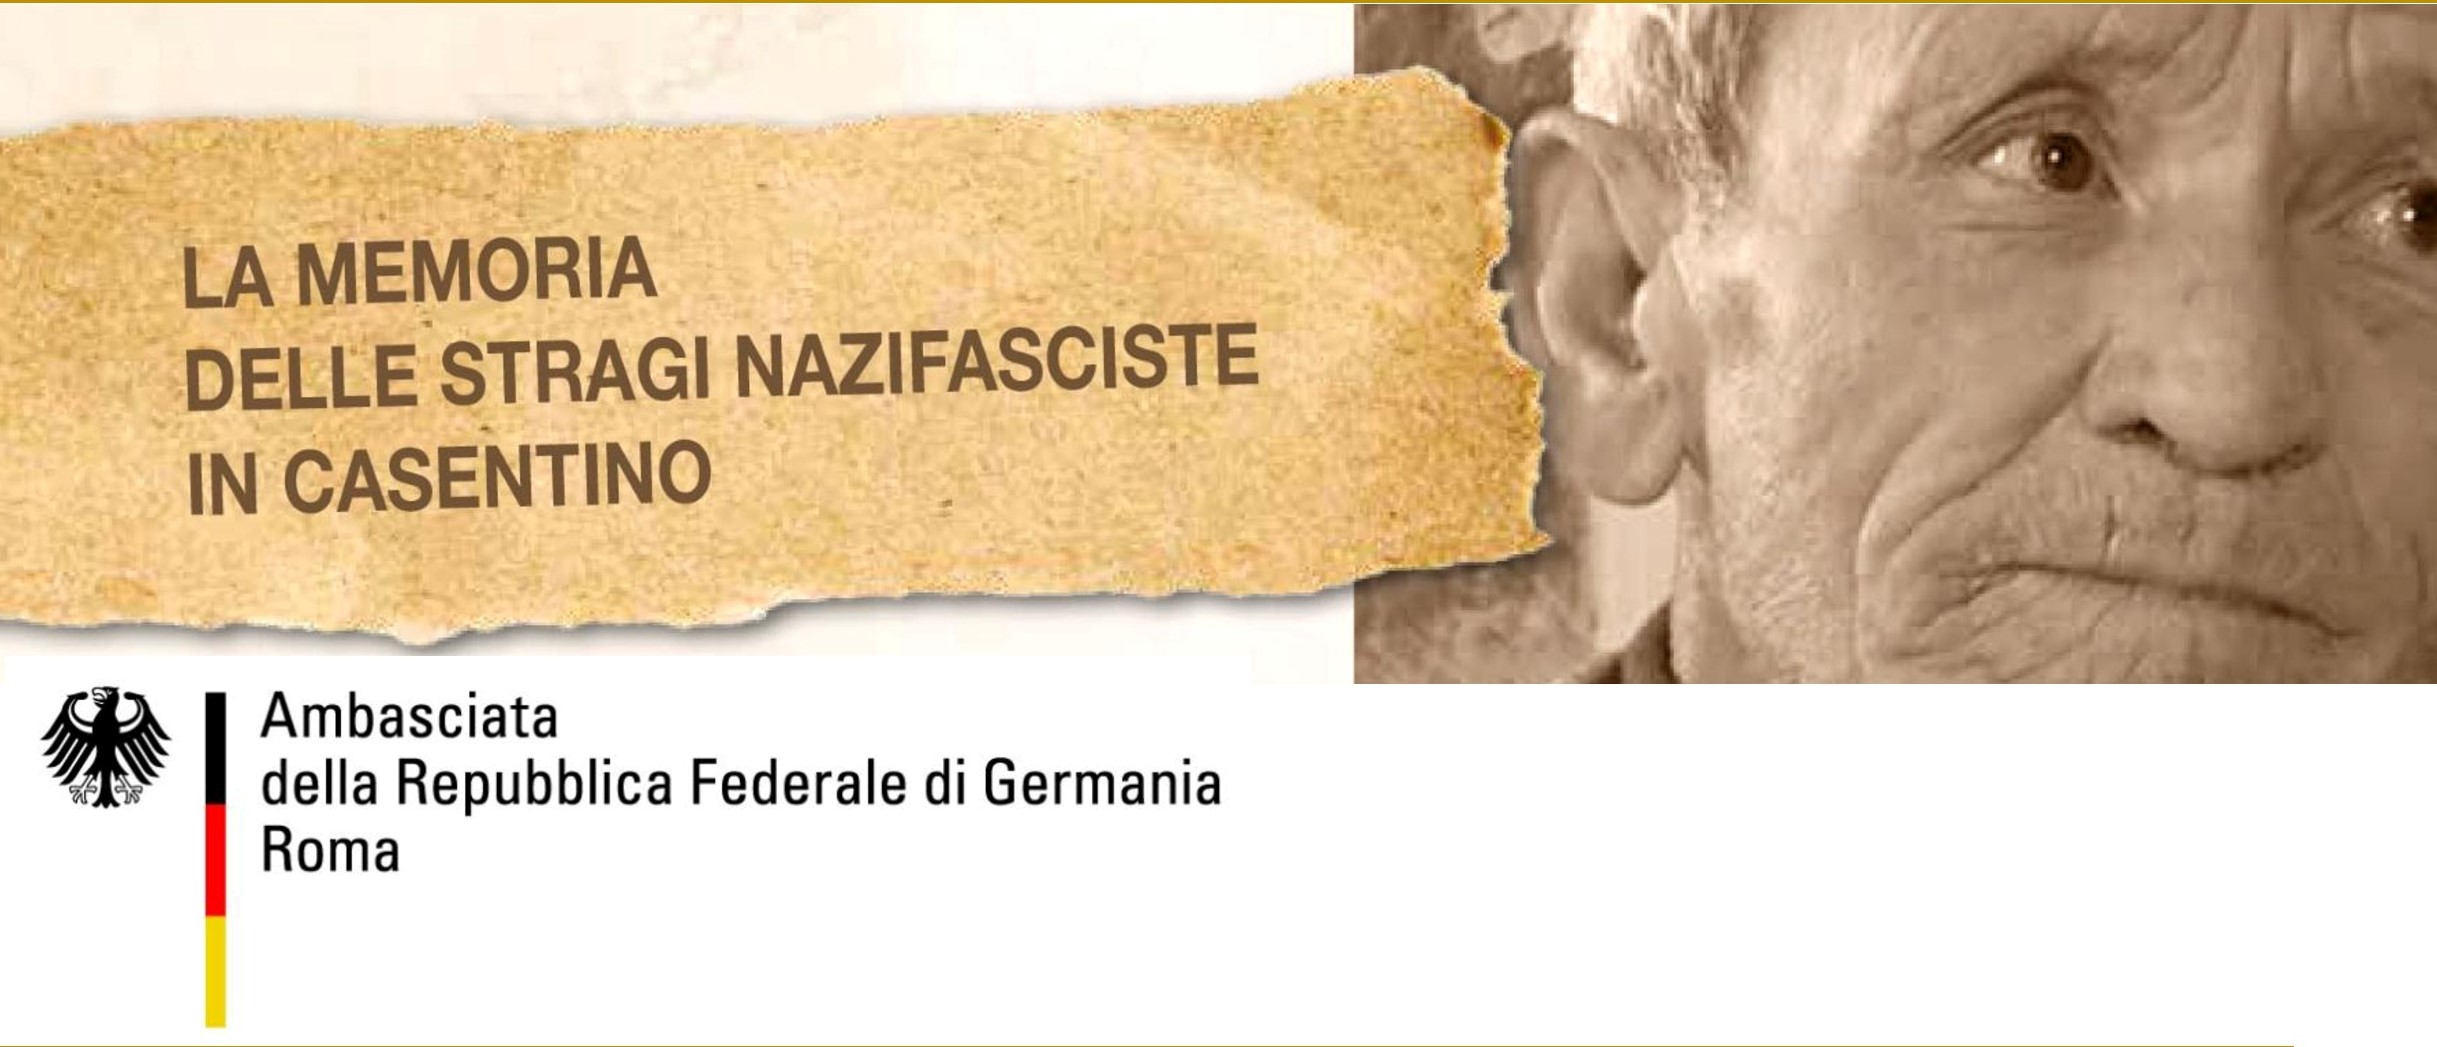 La memoria delle stragi nazifasciste in Casentino: gli eventi della prossima settimana